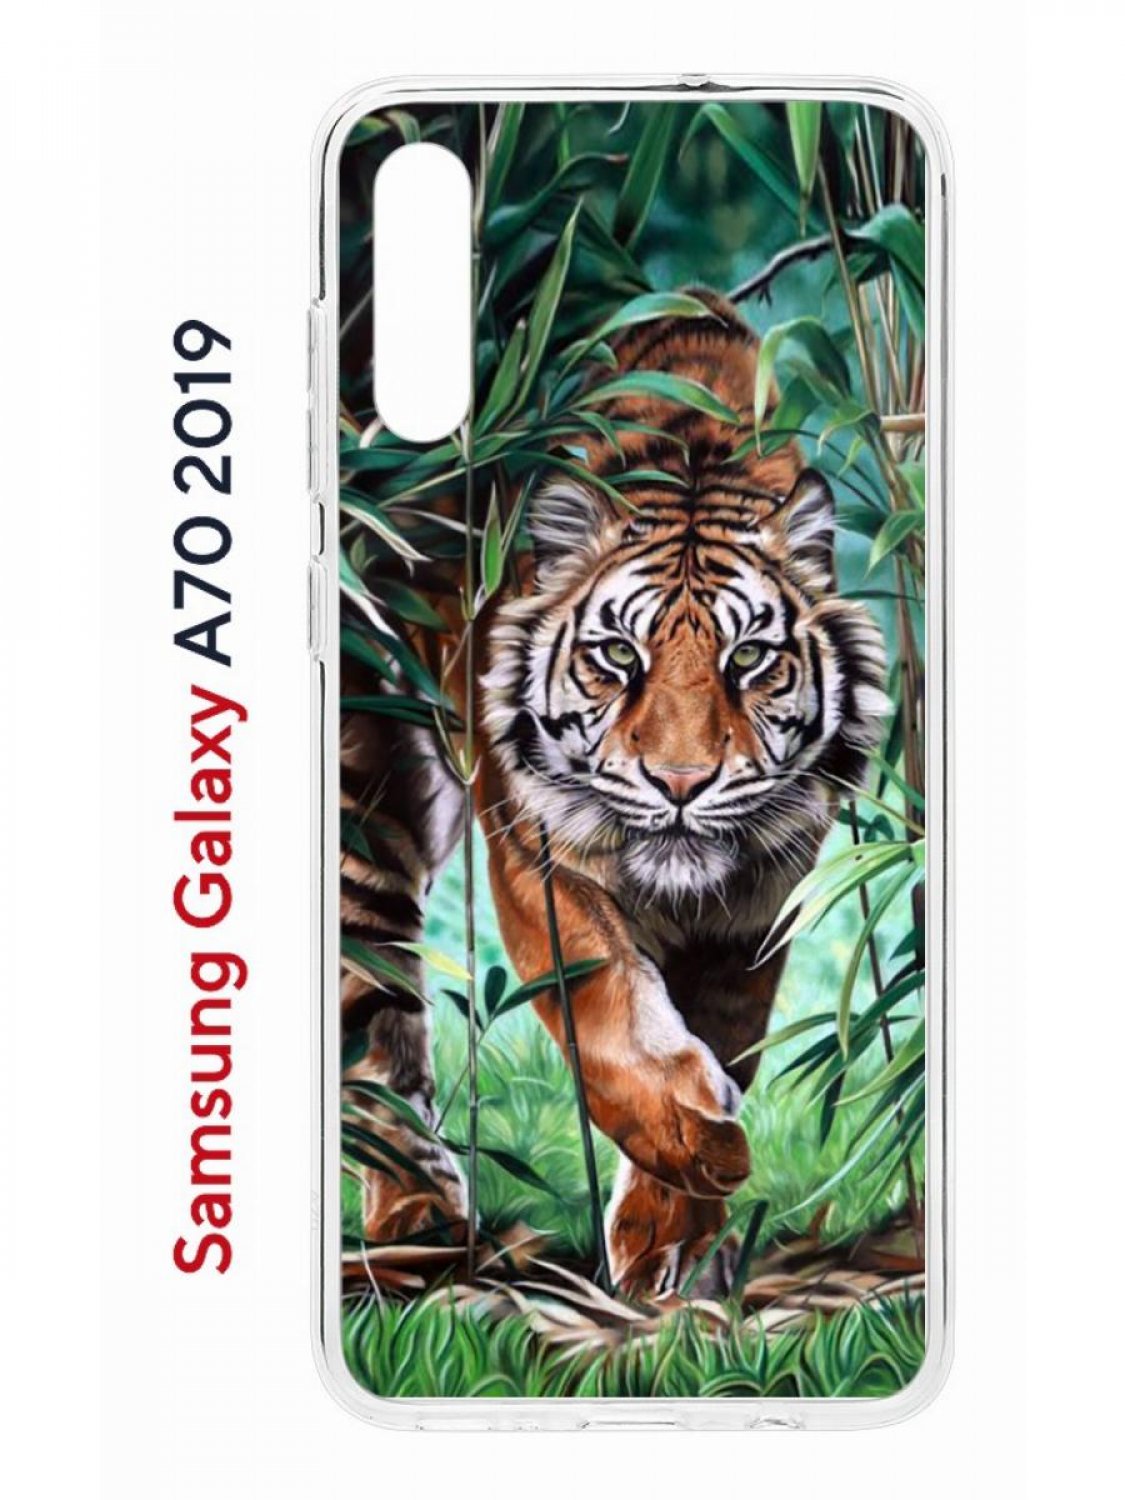 фото Чехол на samsung galaxy a70 kruche print крадущийся тигр,противоударный силиконовый бампер кruче